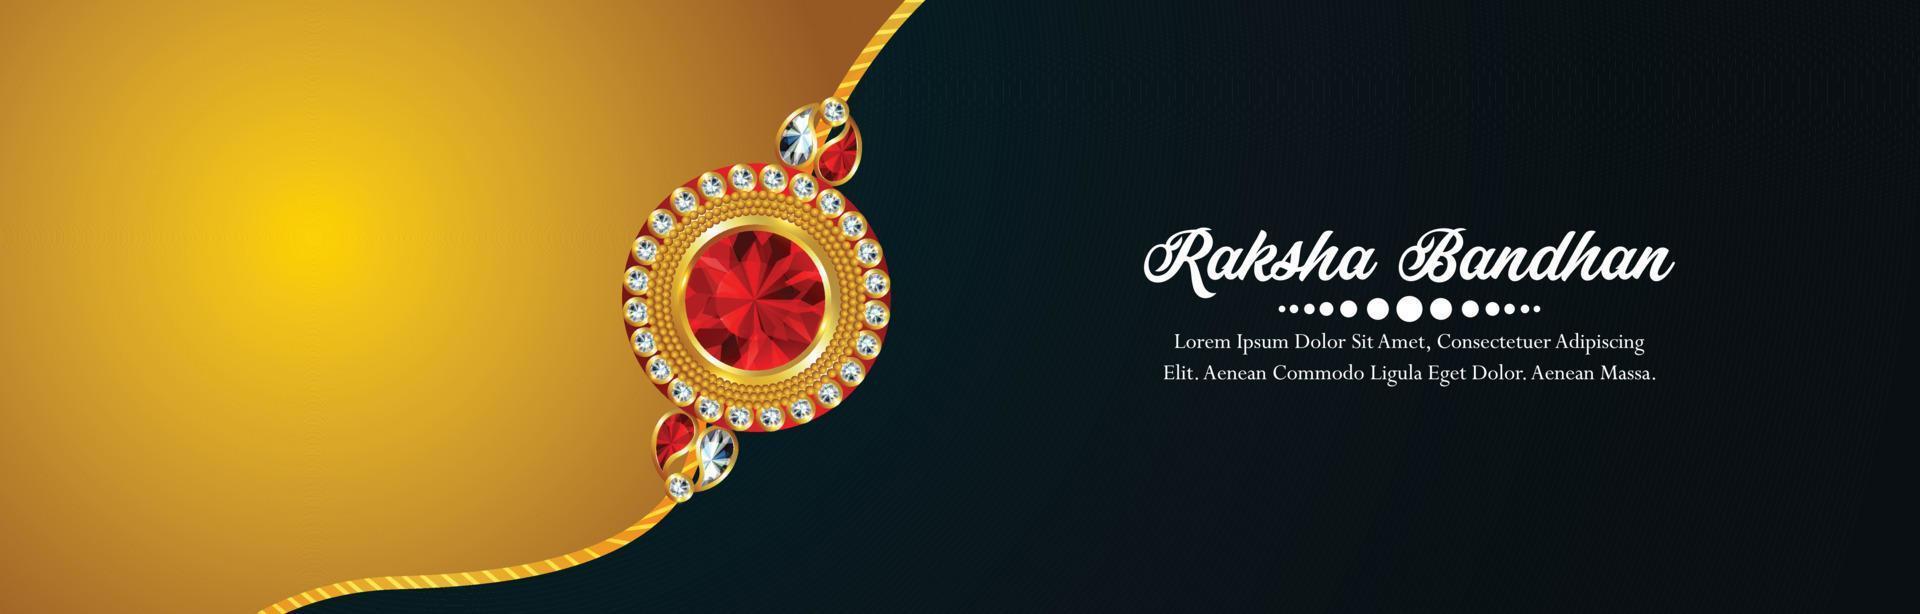 concetto di design creativo per lo sfondo felice della celebrazione di raksha bandhan vettore